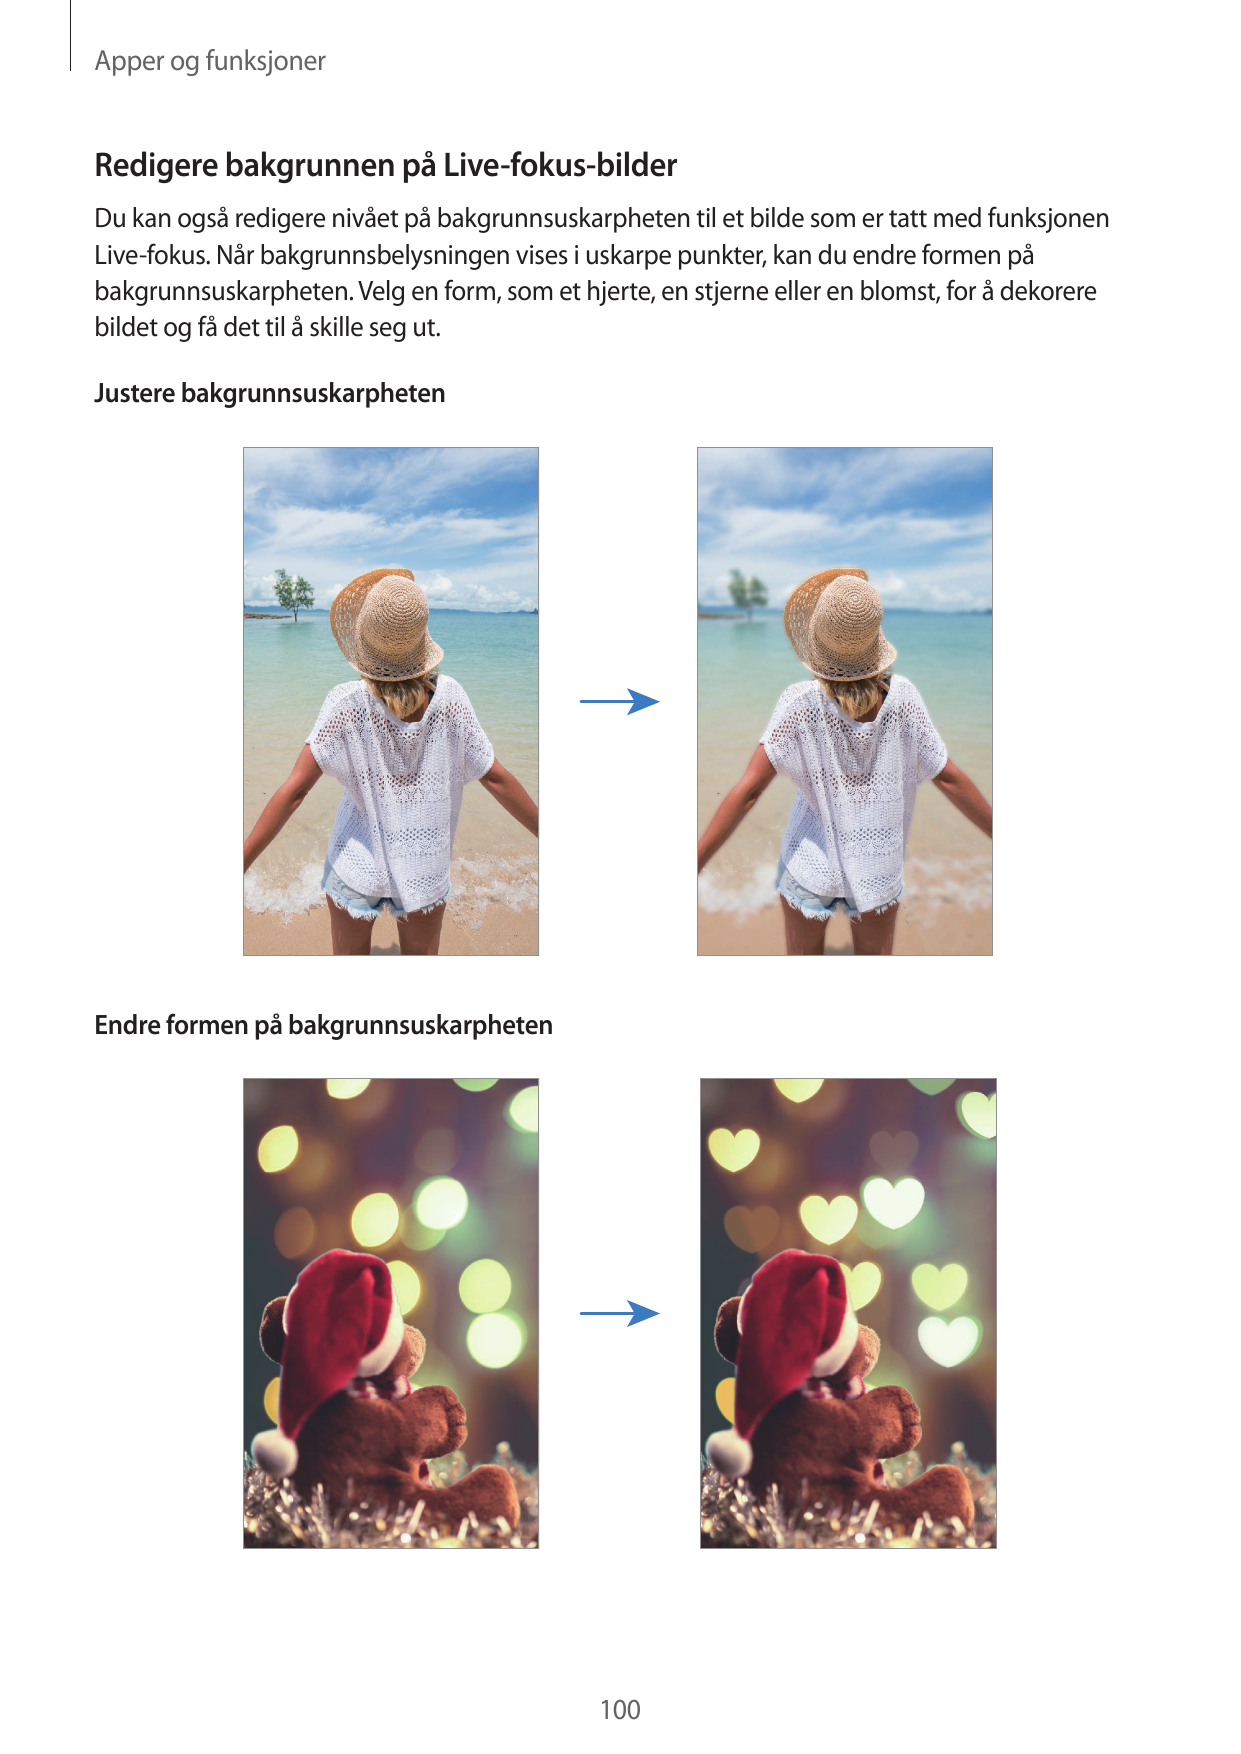 Apper og funksjonerRedigere bakgrunnen på Live-fokus-bilderDu kan også redigere nivået på bakgrunnsuskarpheten til et bilde som 